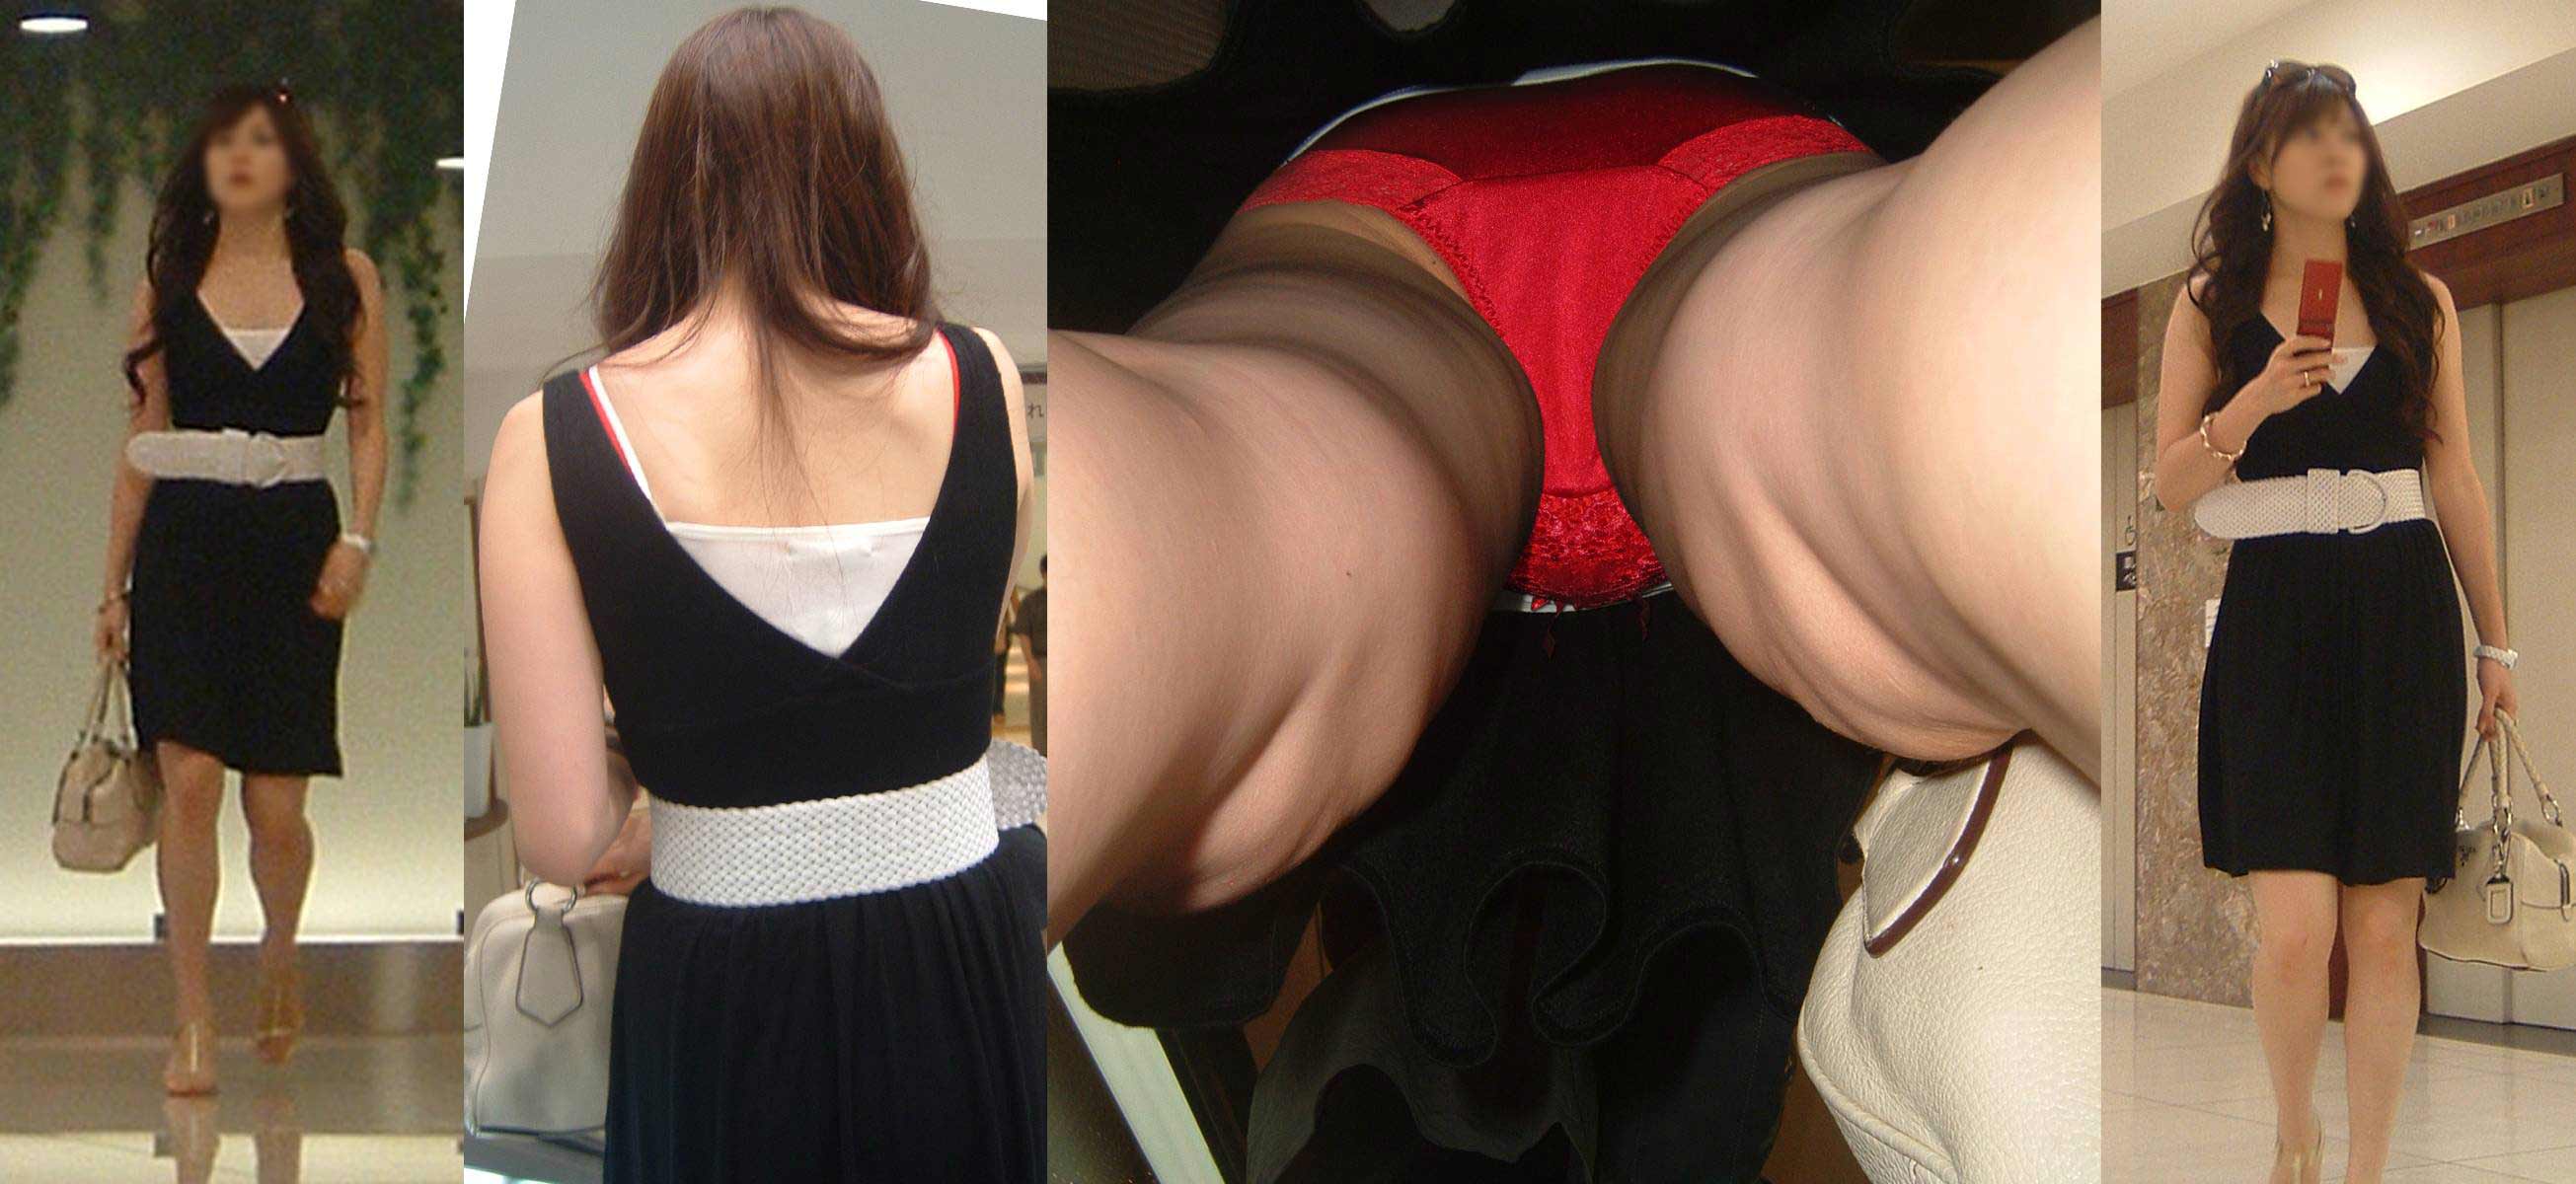 【逆さ撮り】ド派手な赤パンティを穿いた素人娘のスカート内を接写撮りw 20枚の画像7枚目